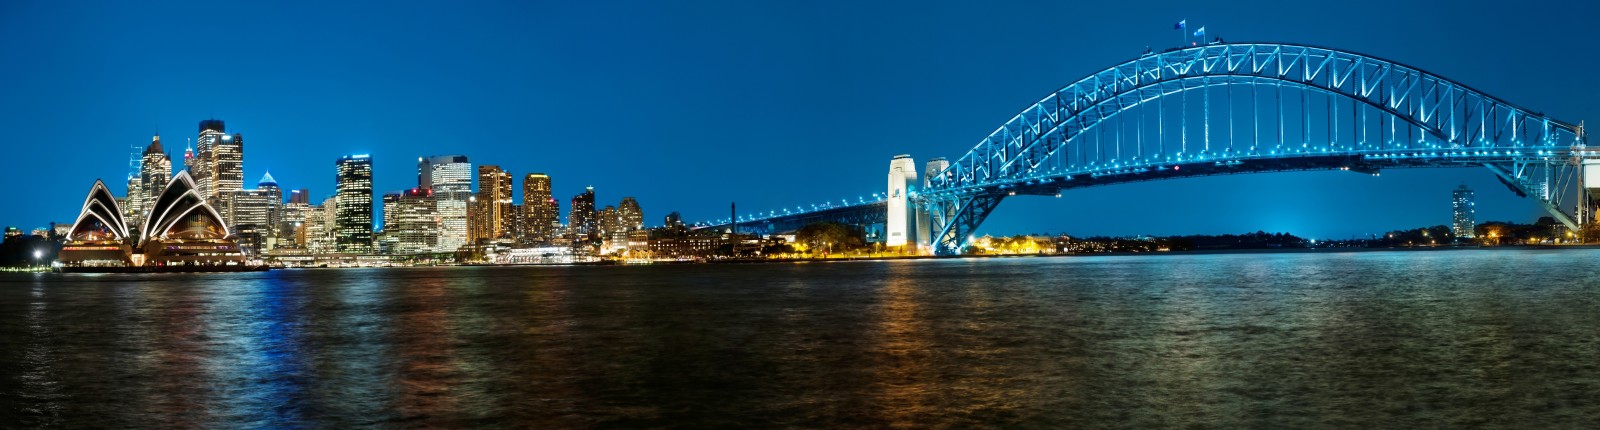 湾, 夜城, 桥, 全景图, 澳大利亚, 悉尼, 海港大桥, 悉尼港